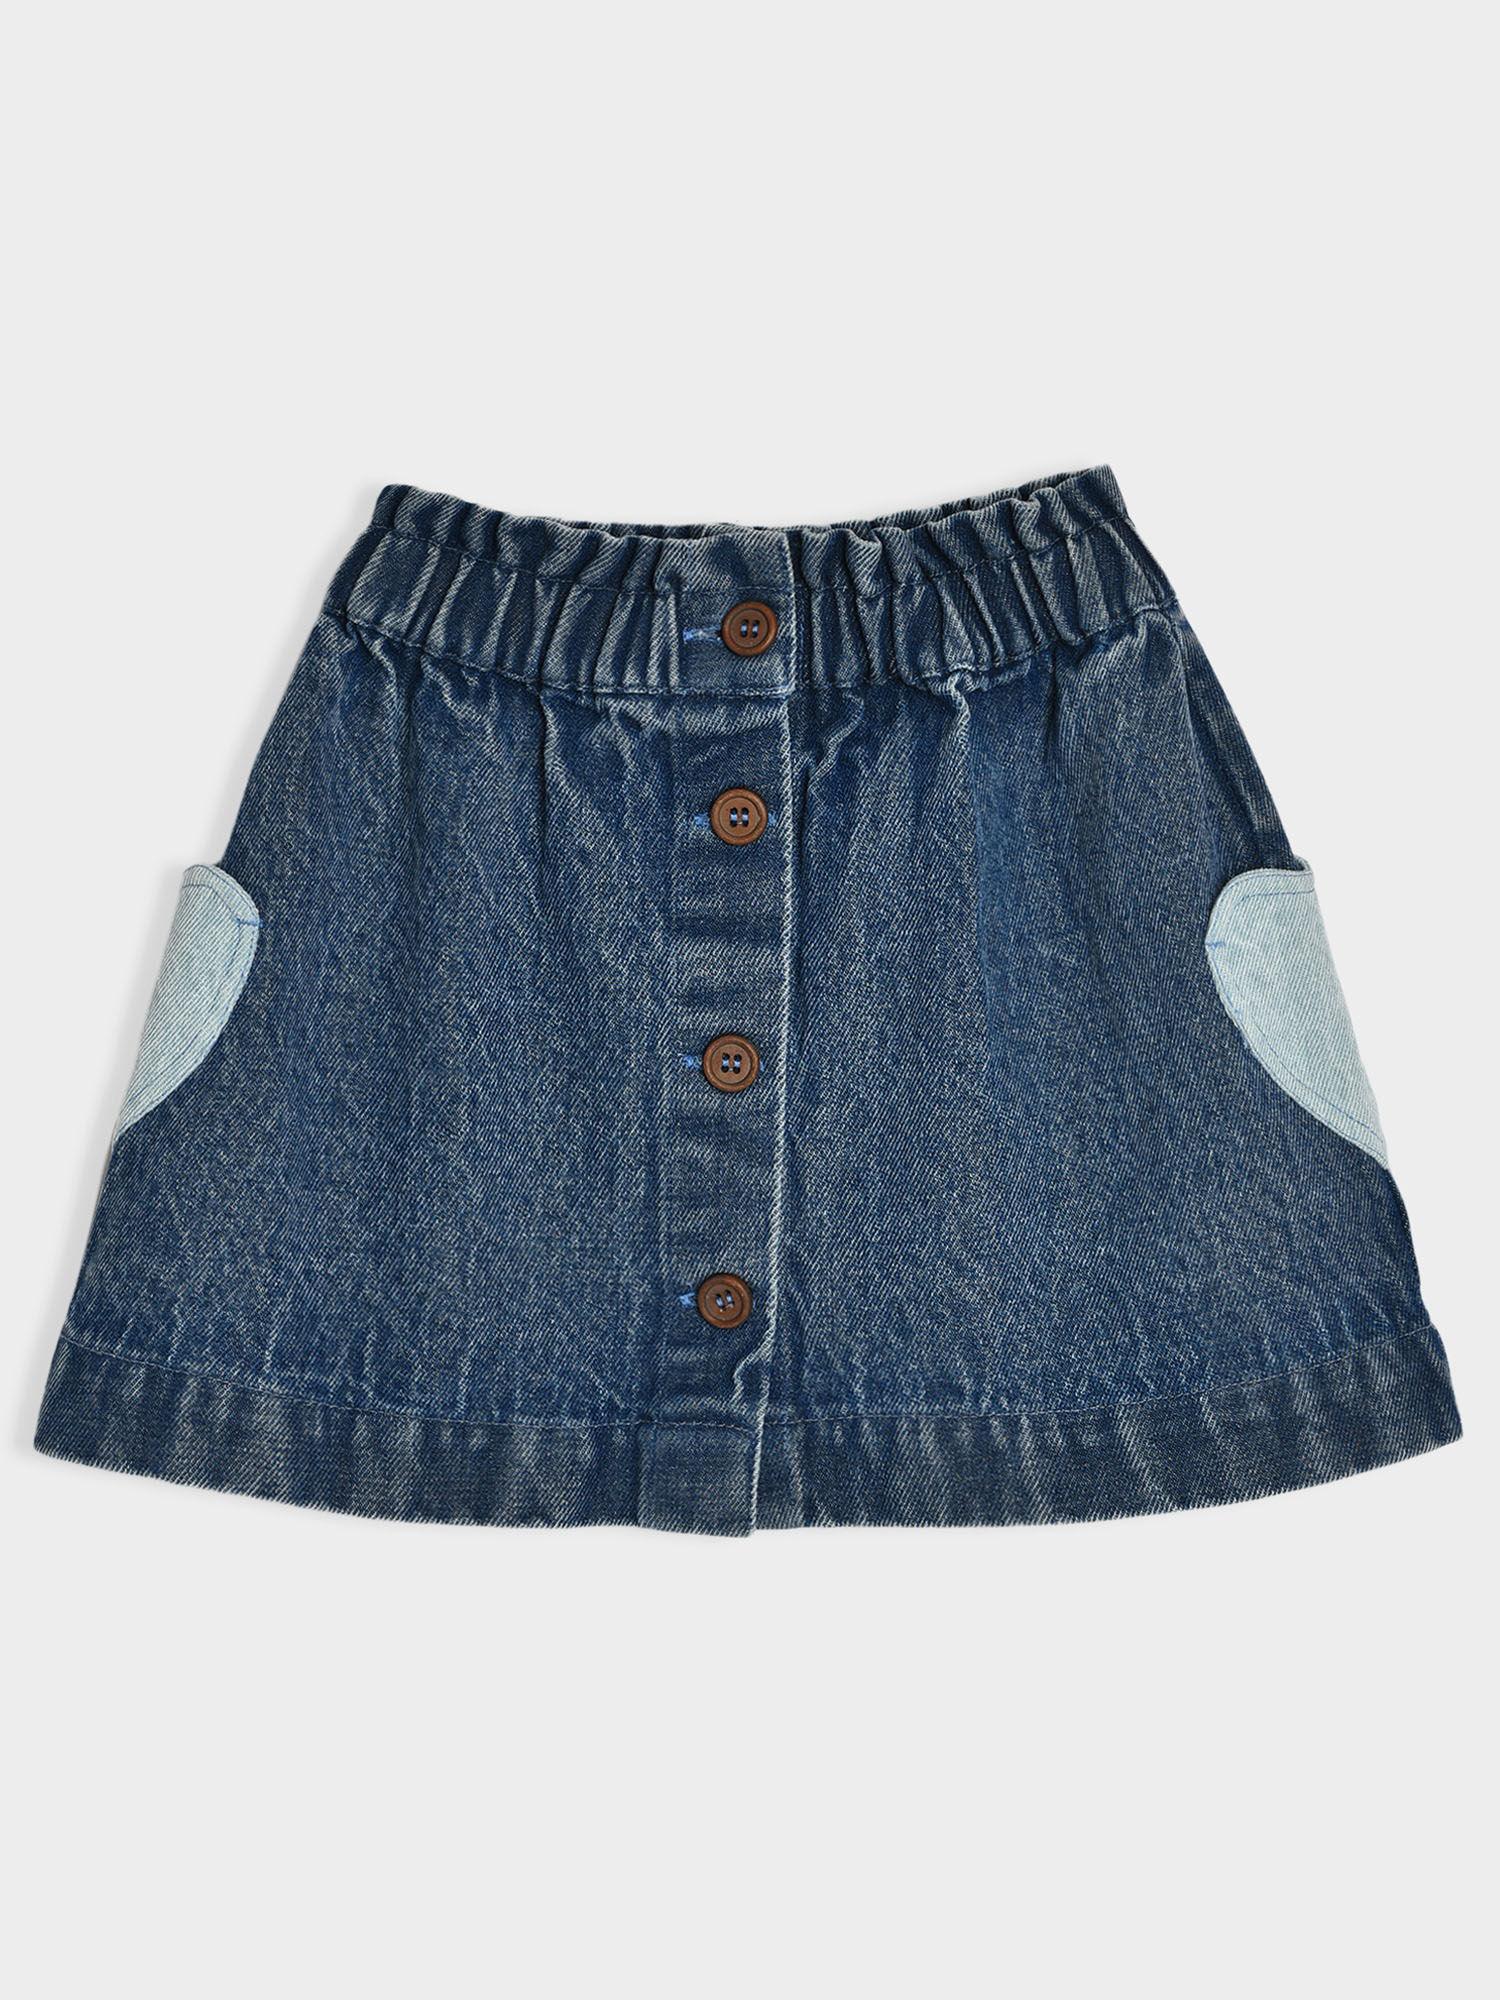 cotton denim blue skirt for girls